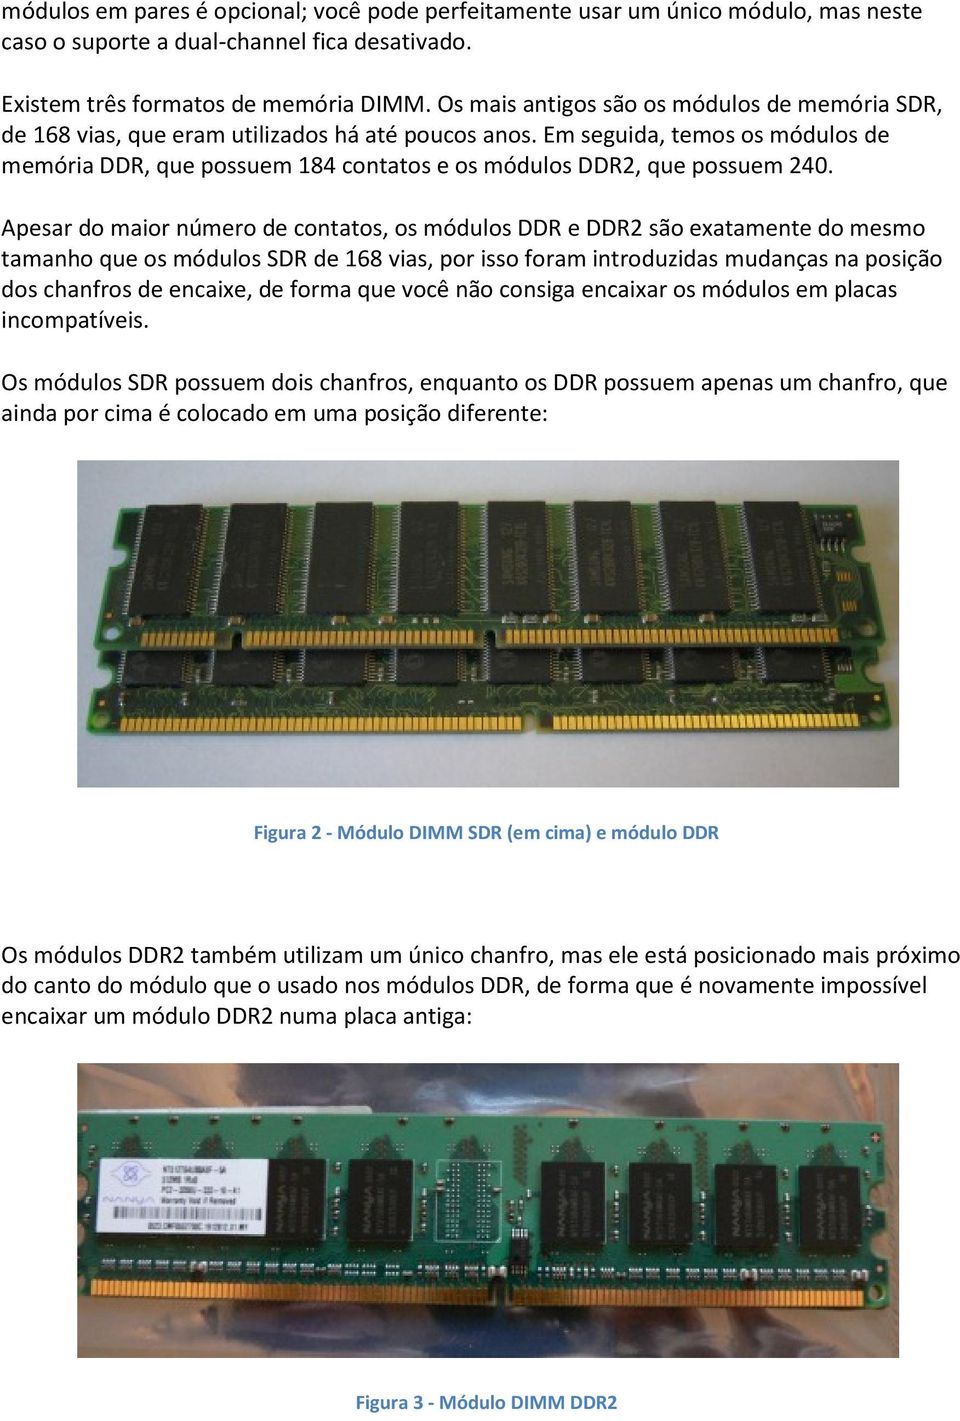 Em seguida, temos os módulos de memória DDR, que possuem 184 contatos e os módulos DDR2, que possuem 240.